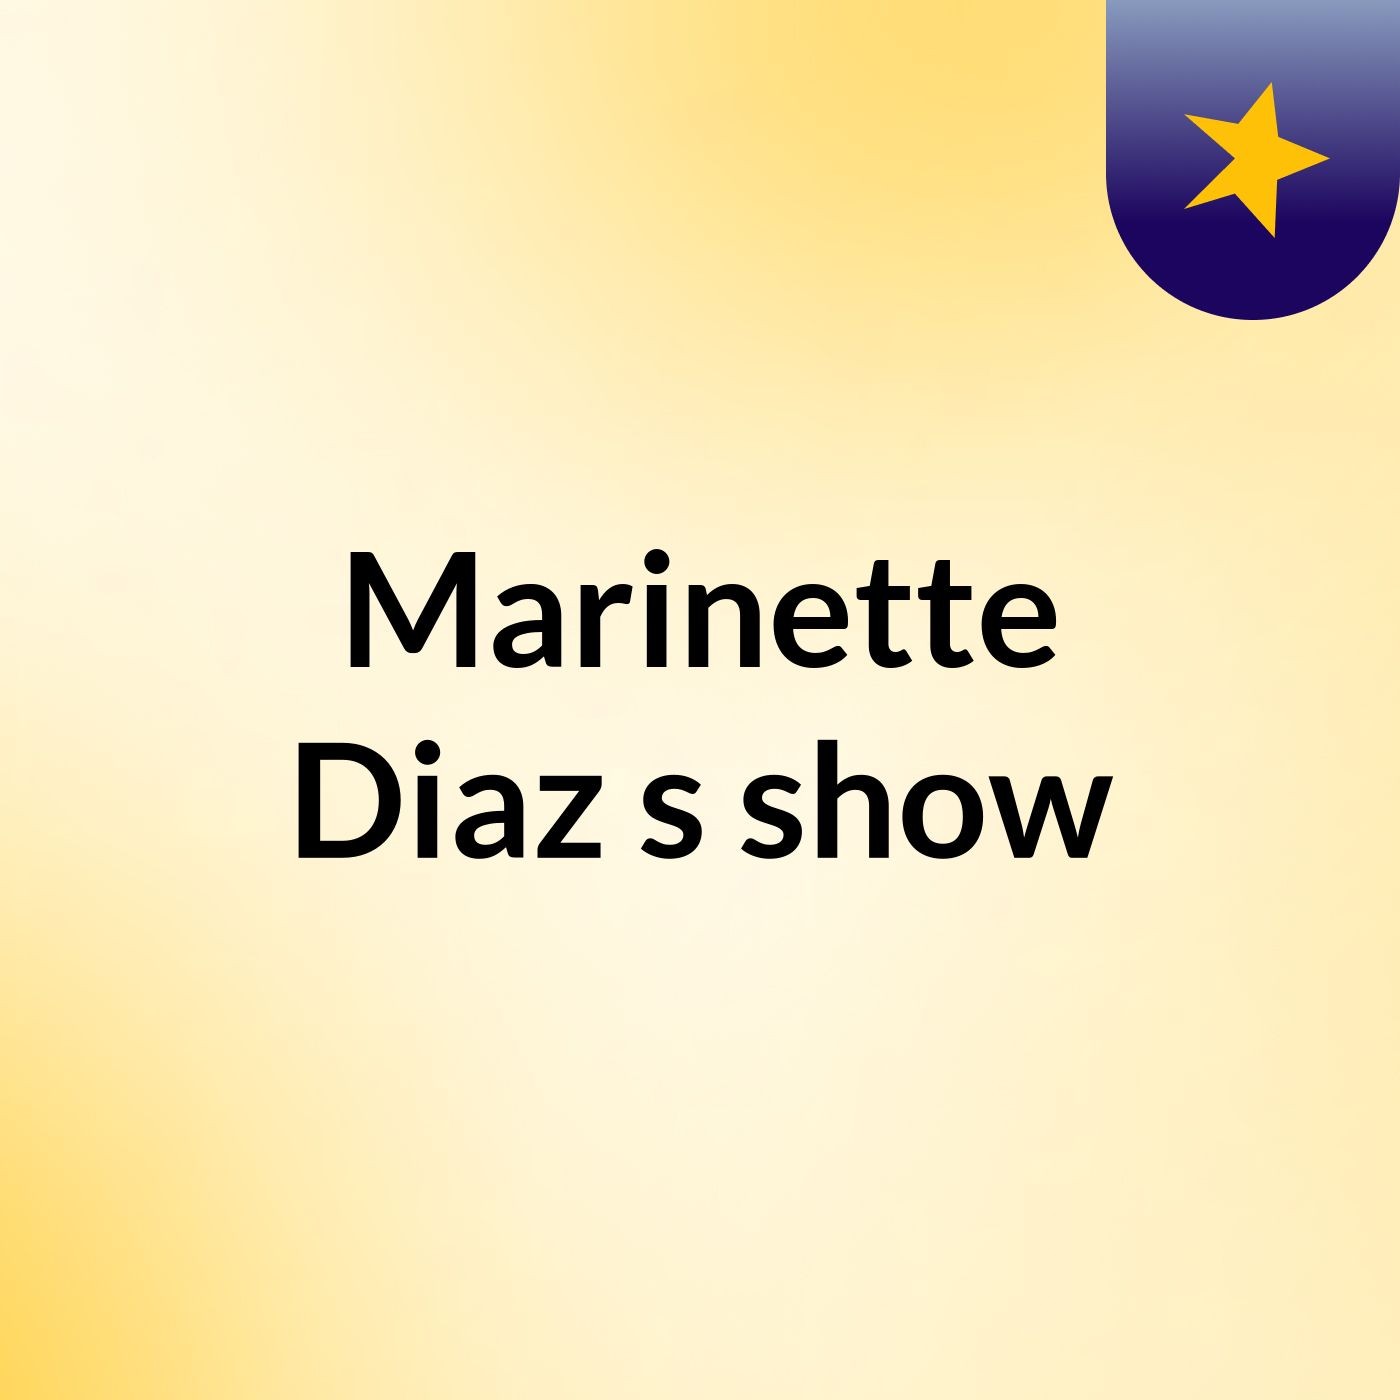 Marinette Diaz's show